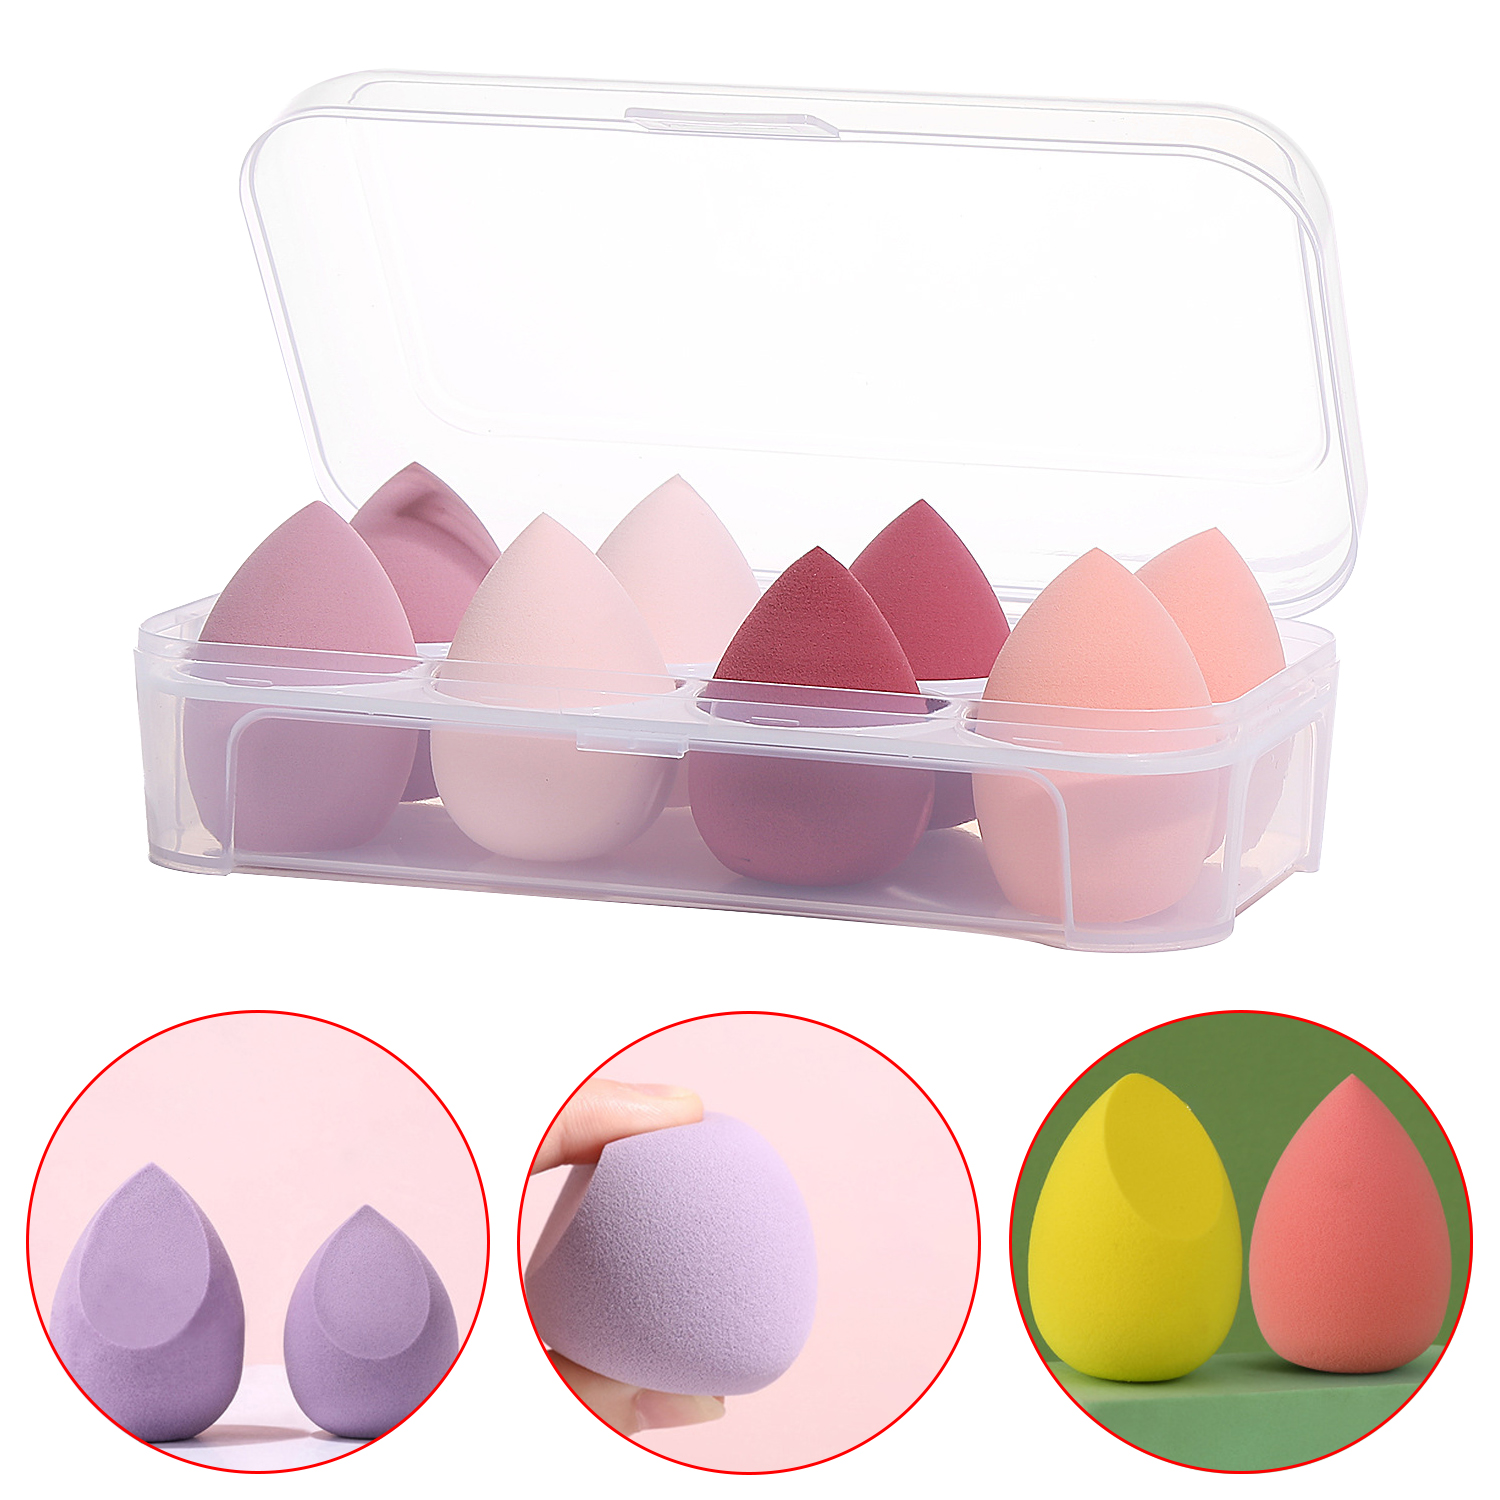 Esponja de maquillaje supersuave respetuosa con el medio ambiente de microfibra, 8 Uds., con caja de belleza, juego de huevos de esponja de maquillaje